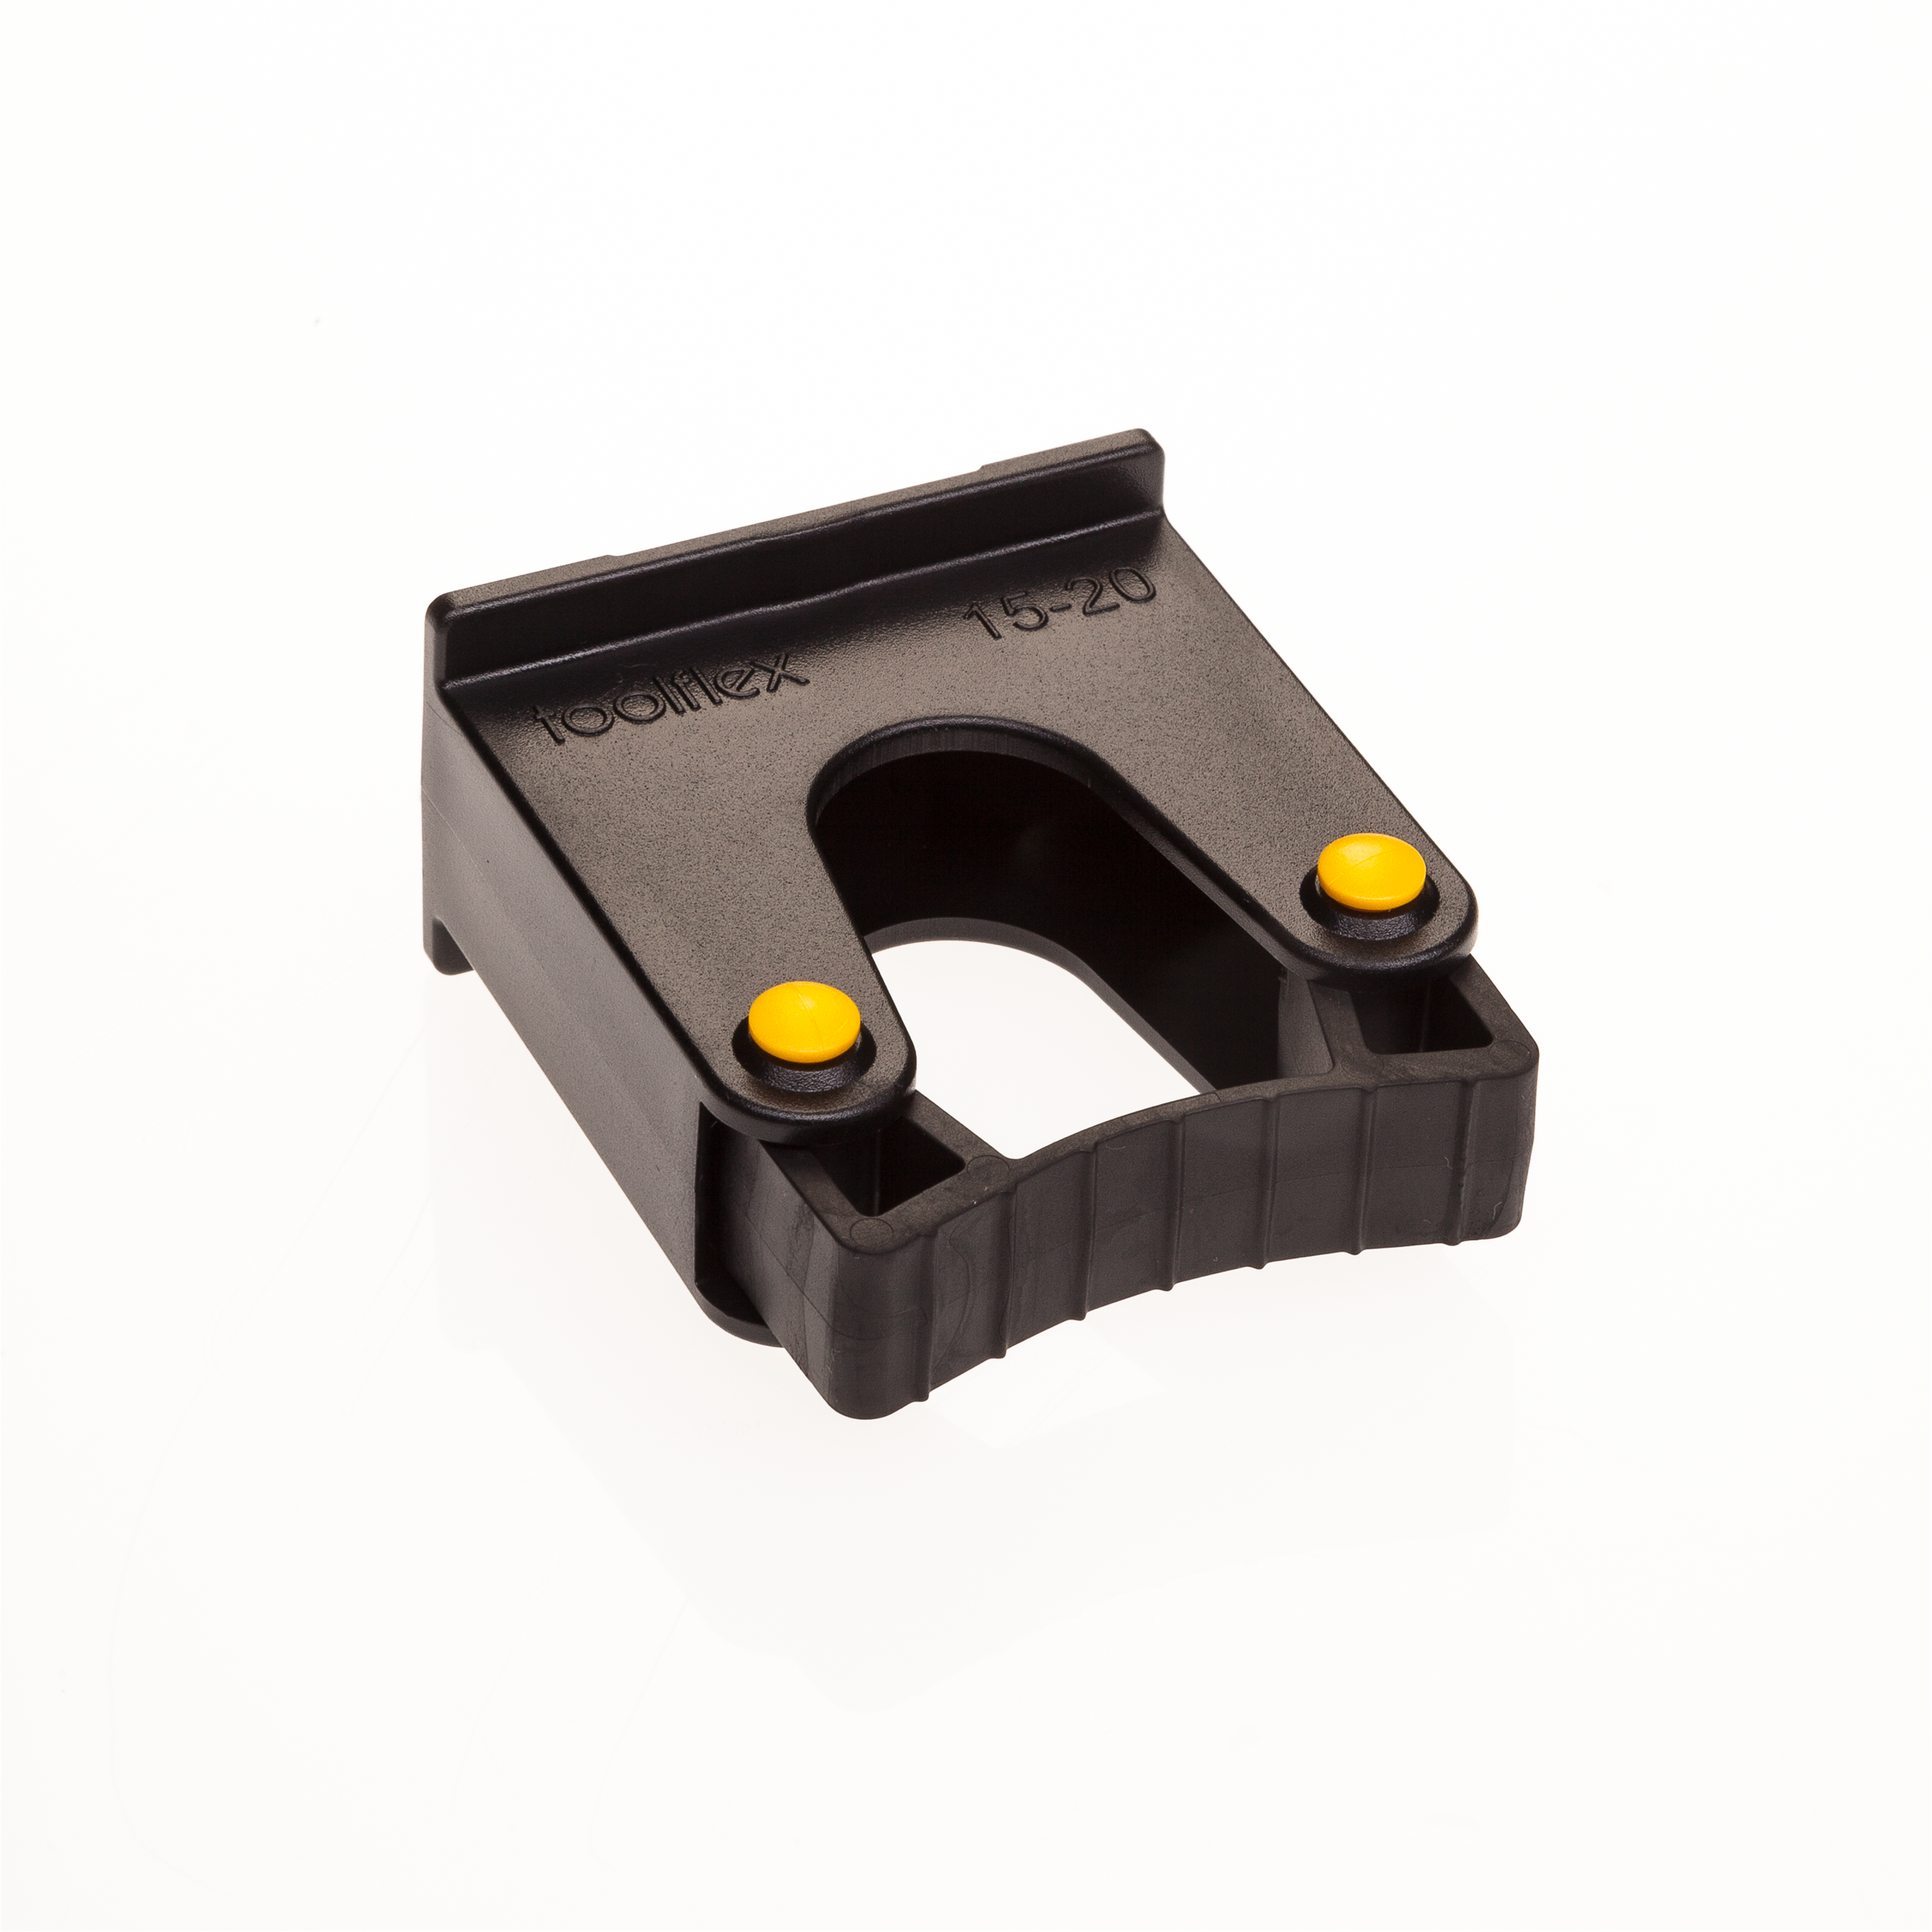 Toolflex Halterung 15-20 mm für Alu-Schiene in schwarz mit gelben Pins